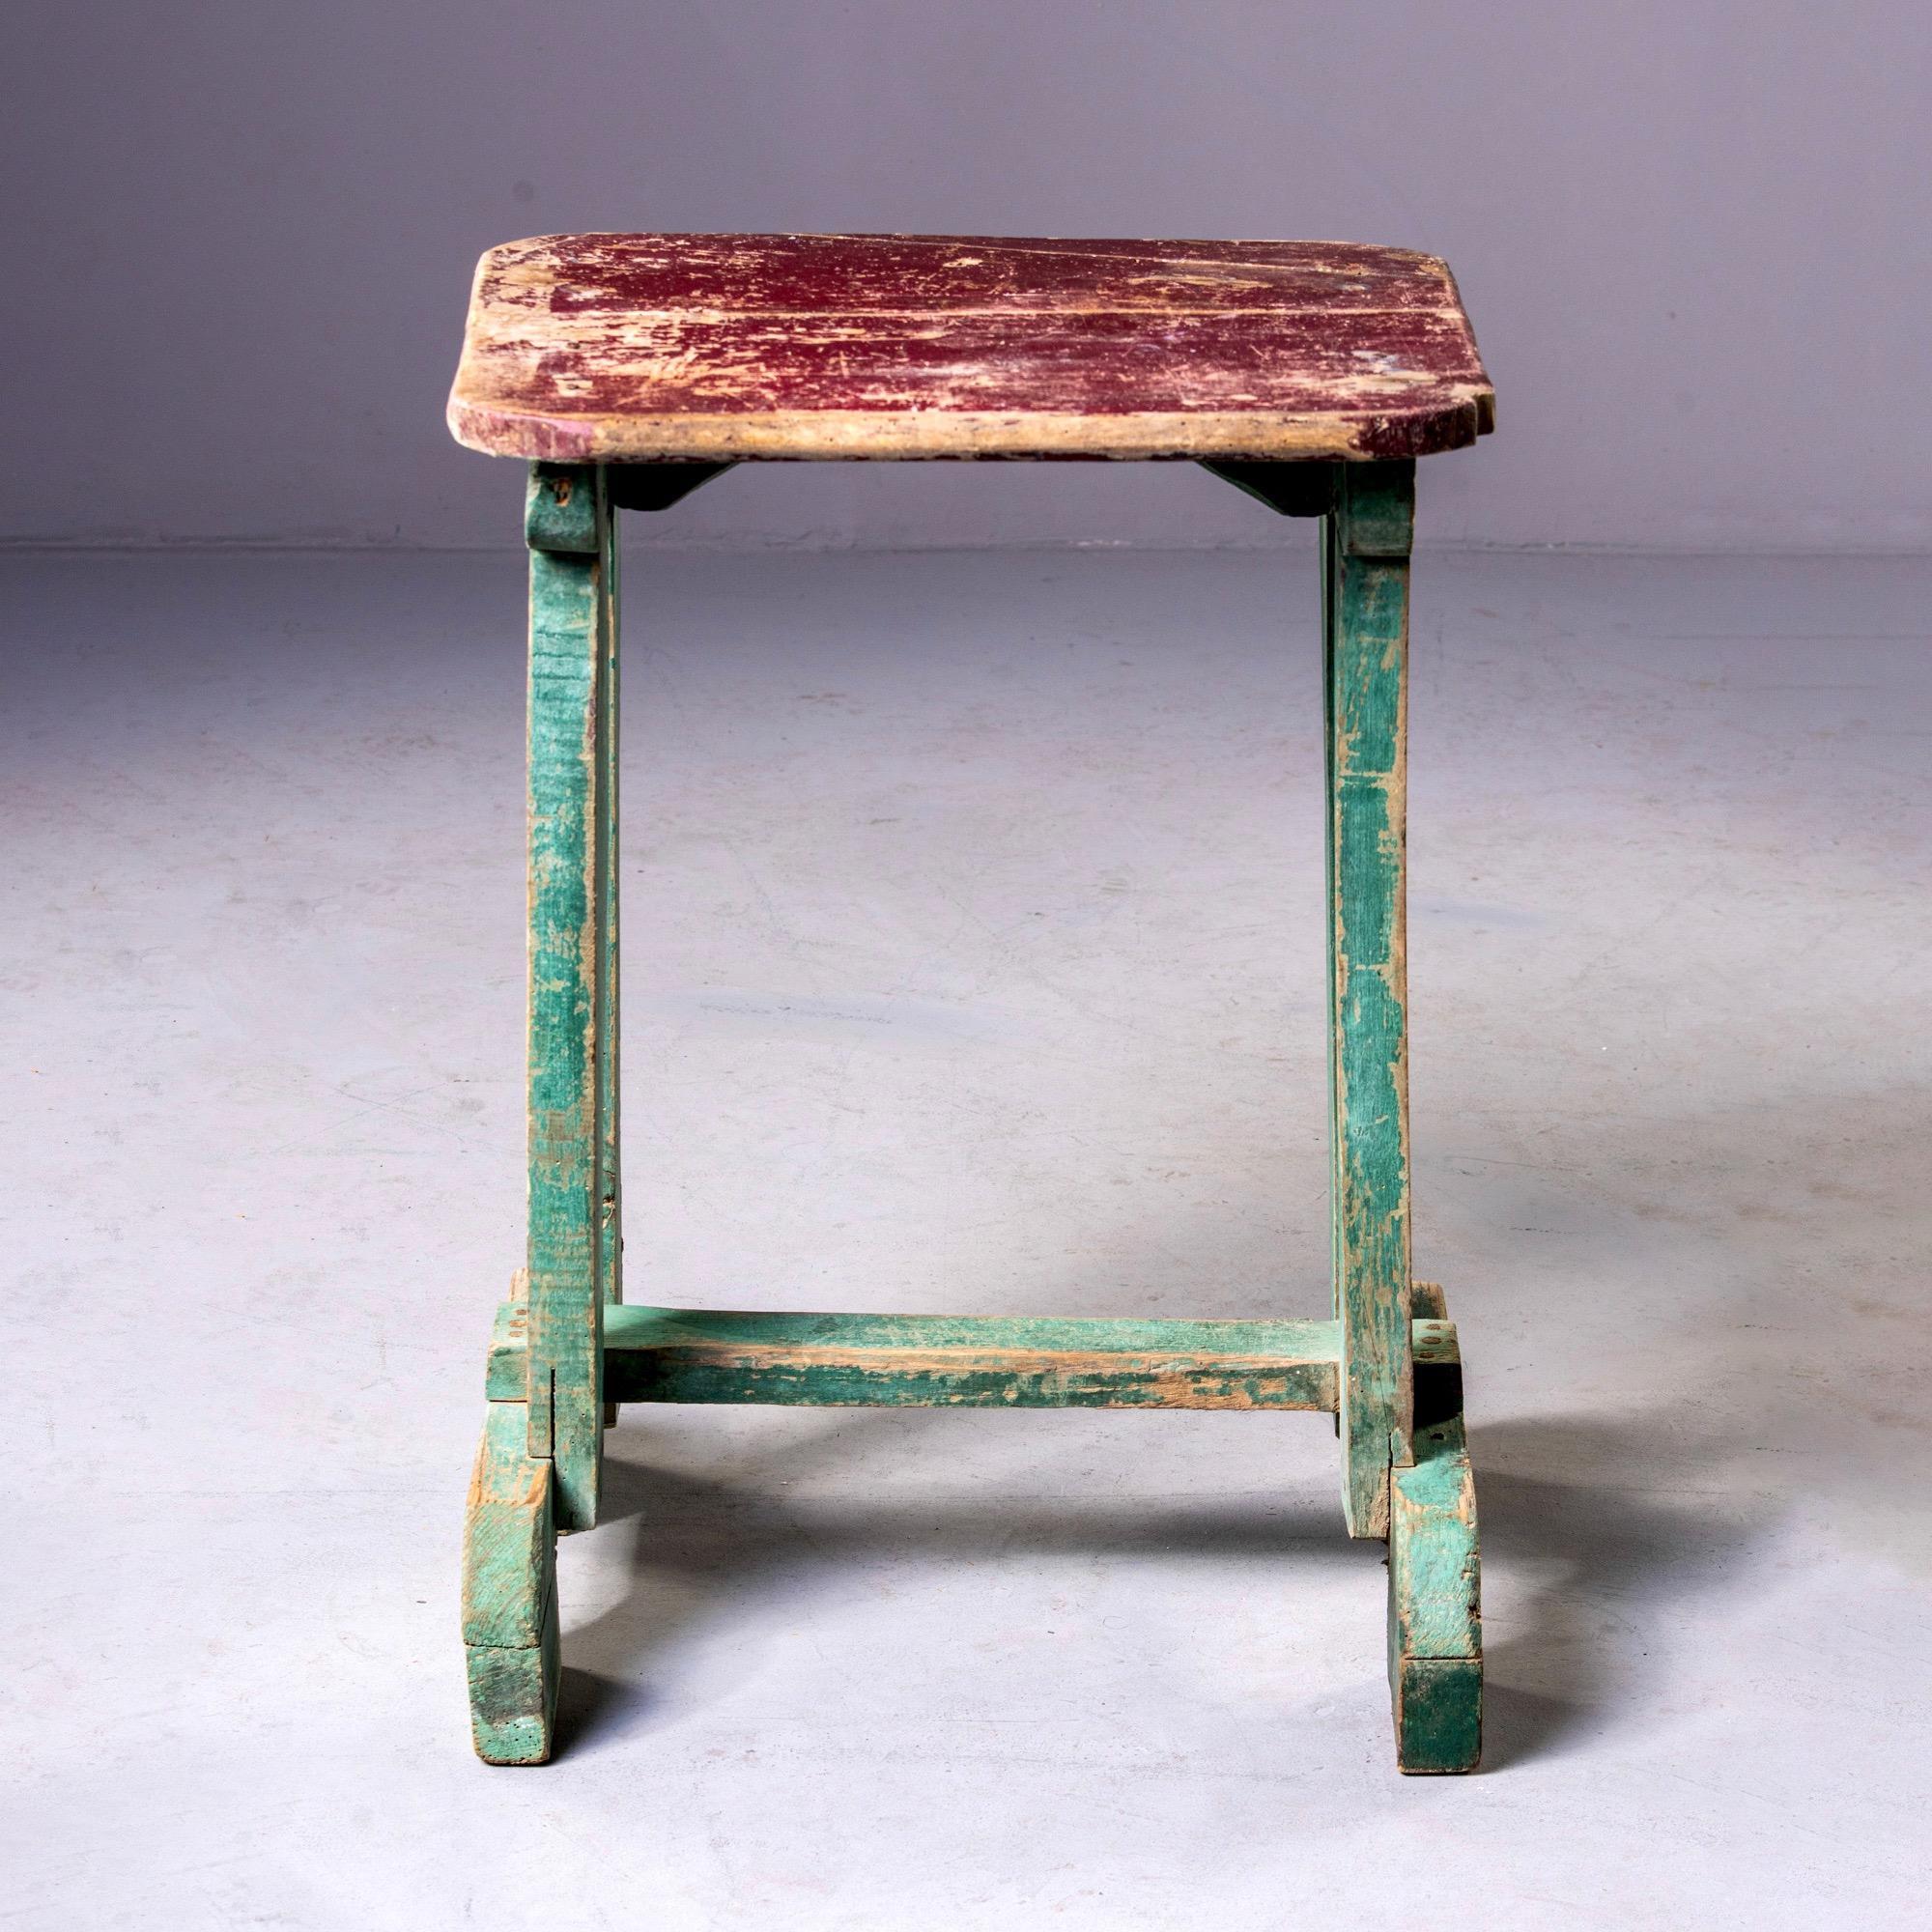 Beistelltisch aus bemaltem Holz, gefunden in England, um 1900. Original rote Farbe auf der Tischplatte und grüne Farbe auf dem Sockel. Unbekannter Hersteller.